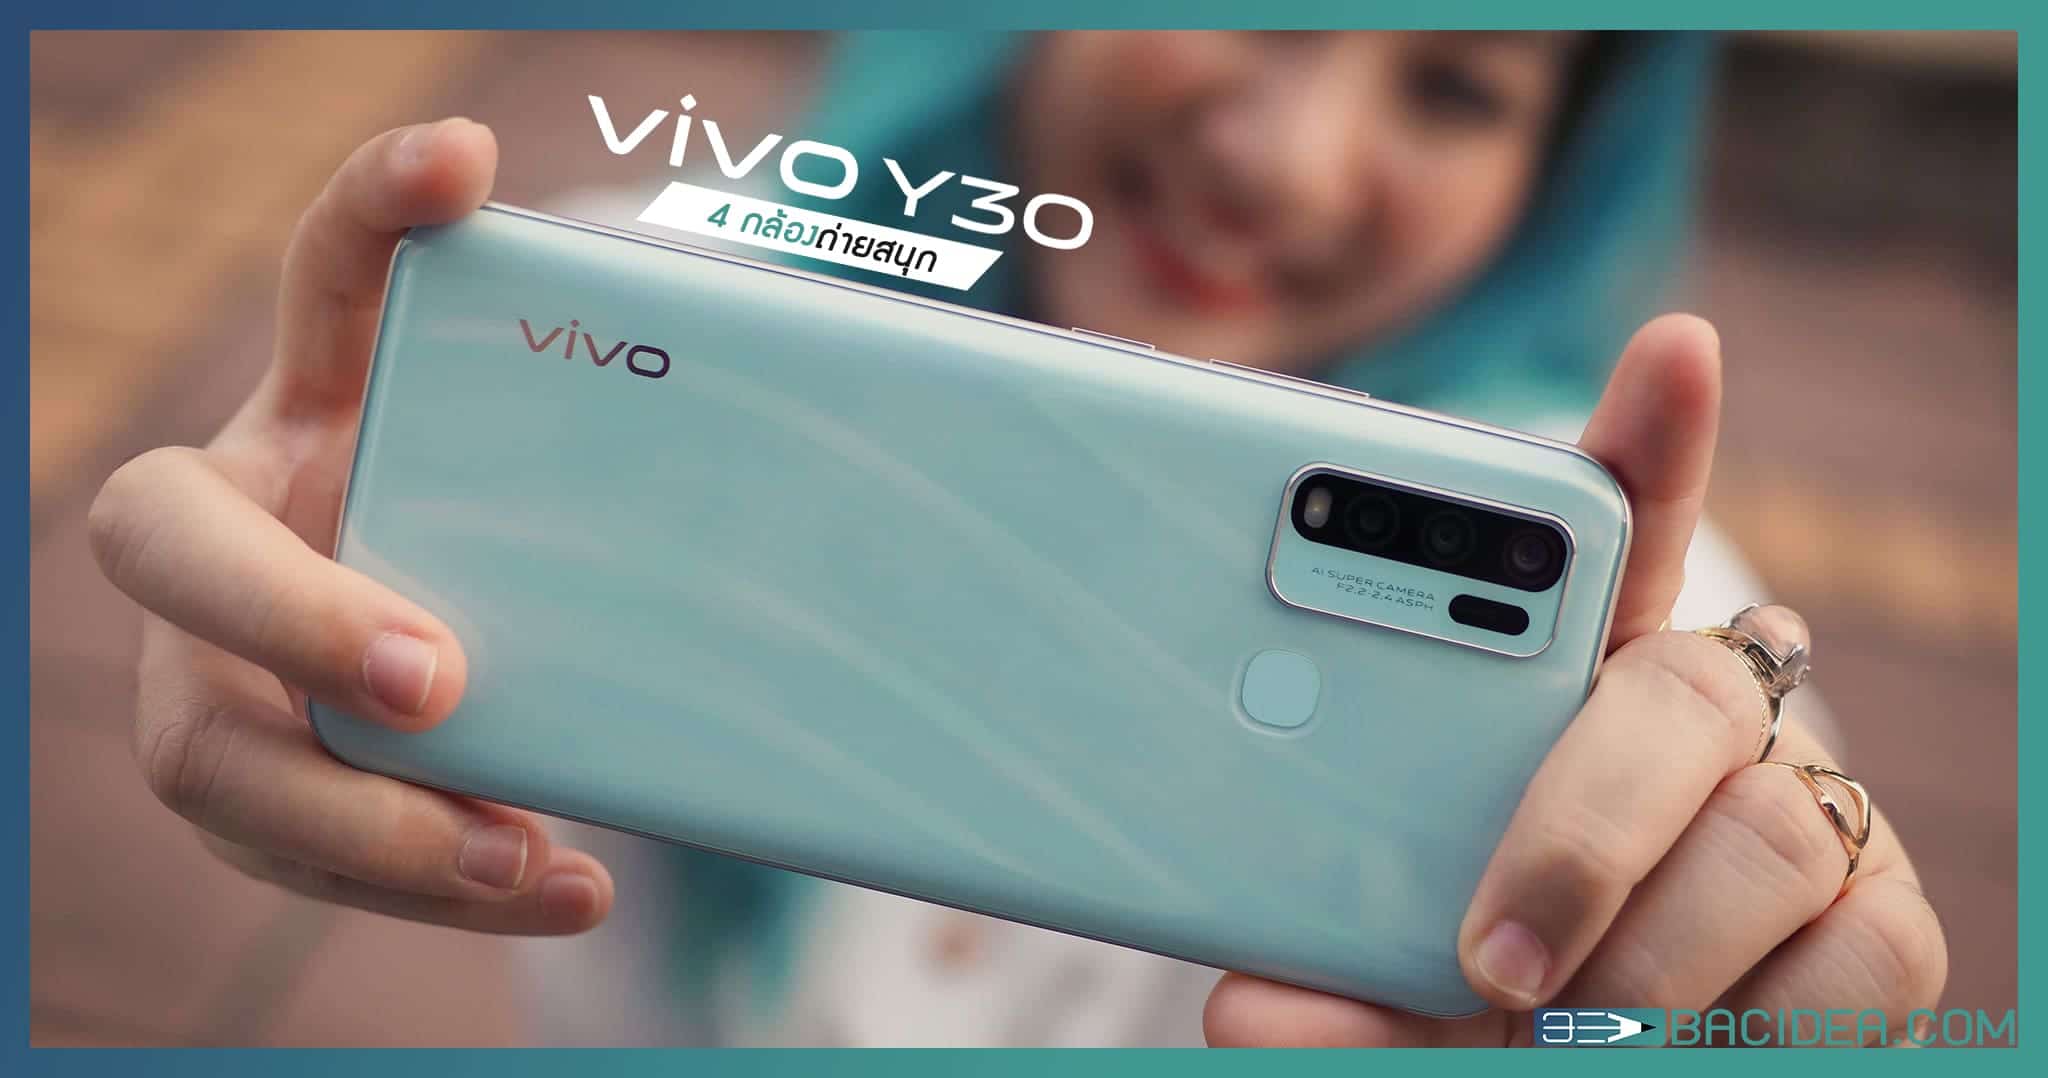 รีวิว Vivo Y30 สี่กล้องถ่ายสนุก โหมดแต่งภาพชั้นเซียน เก็บภาพเพลิน 128 GB ในราคา 6,999 บาท 1